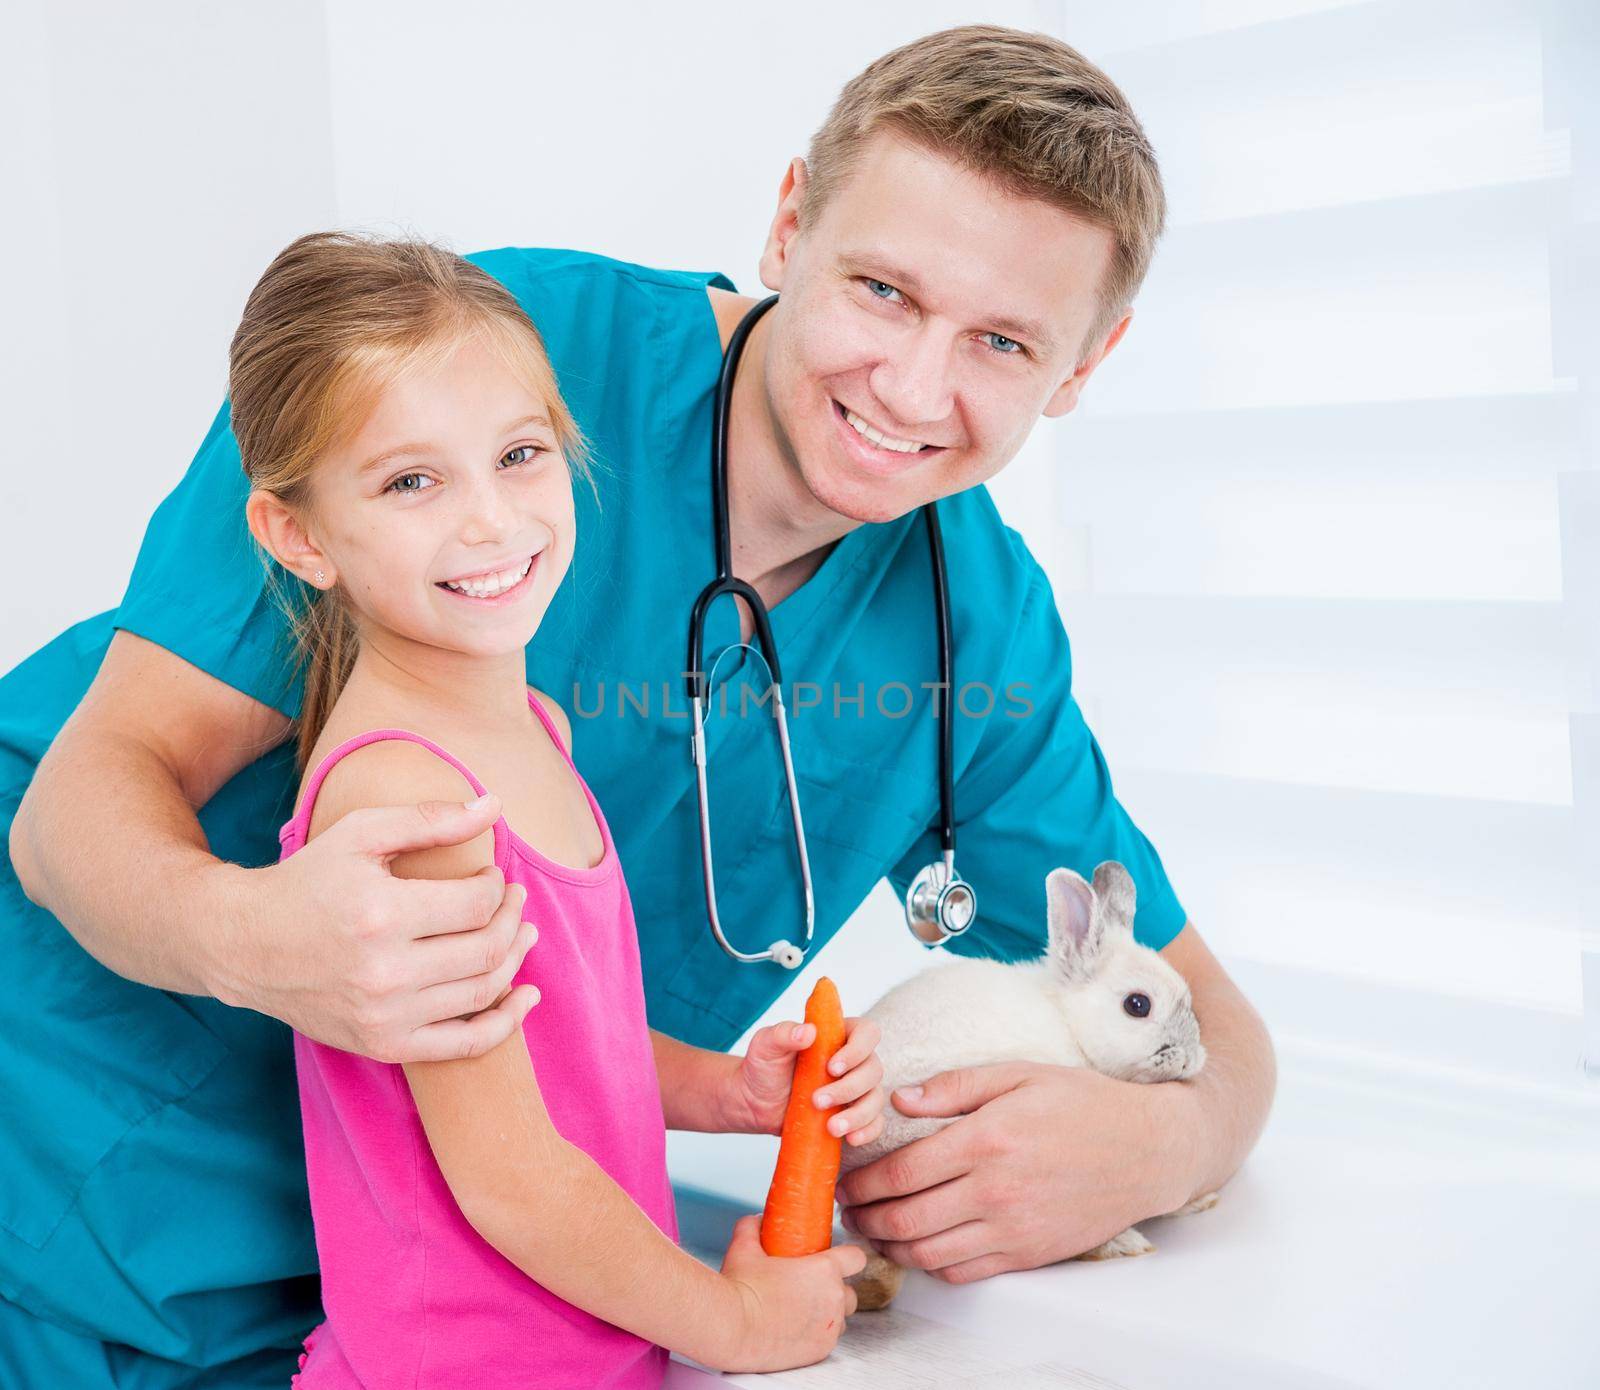 doctor of veterenarii and little girl with rabbit by tan4ikk1